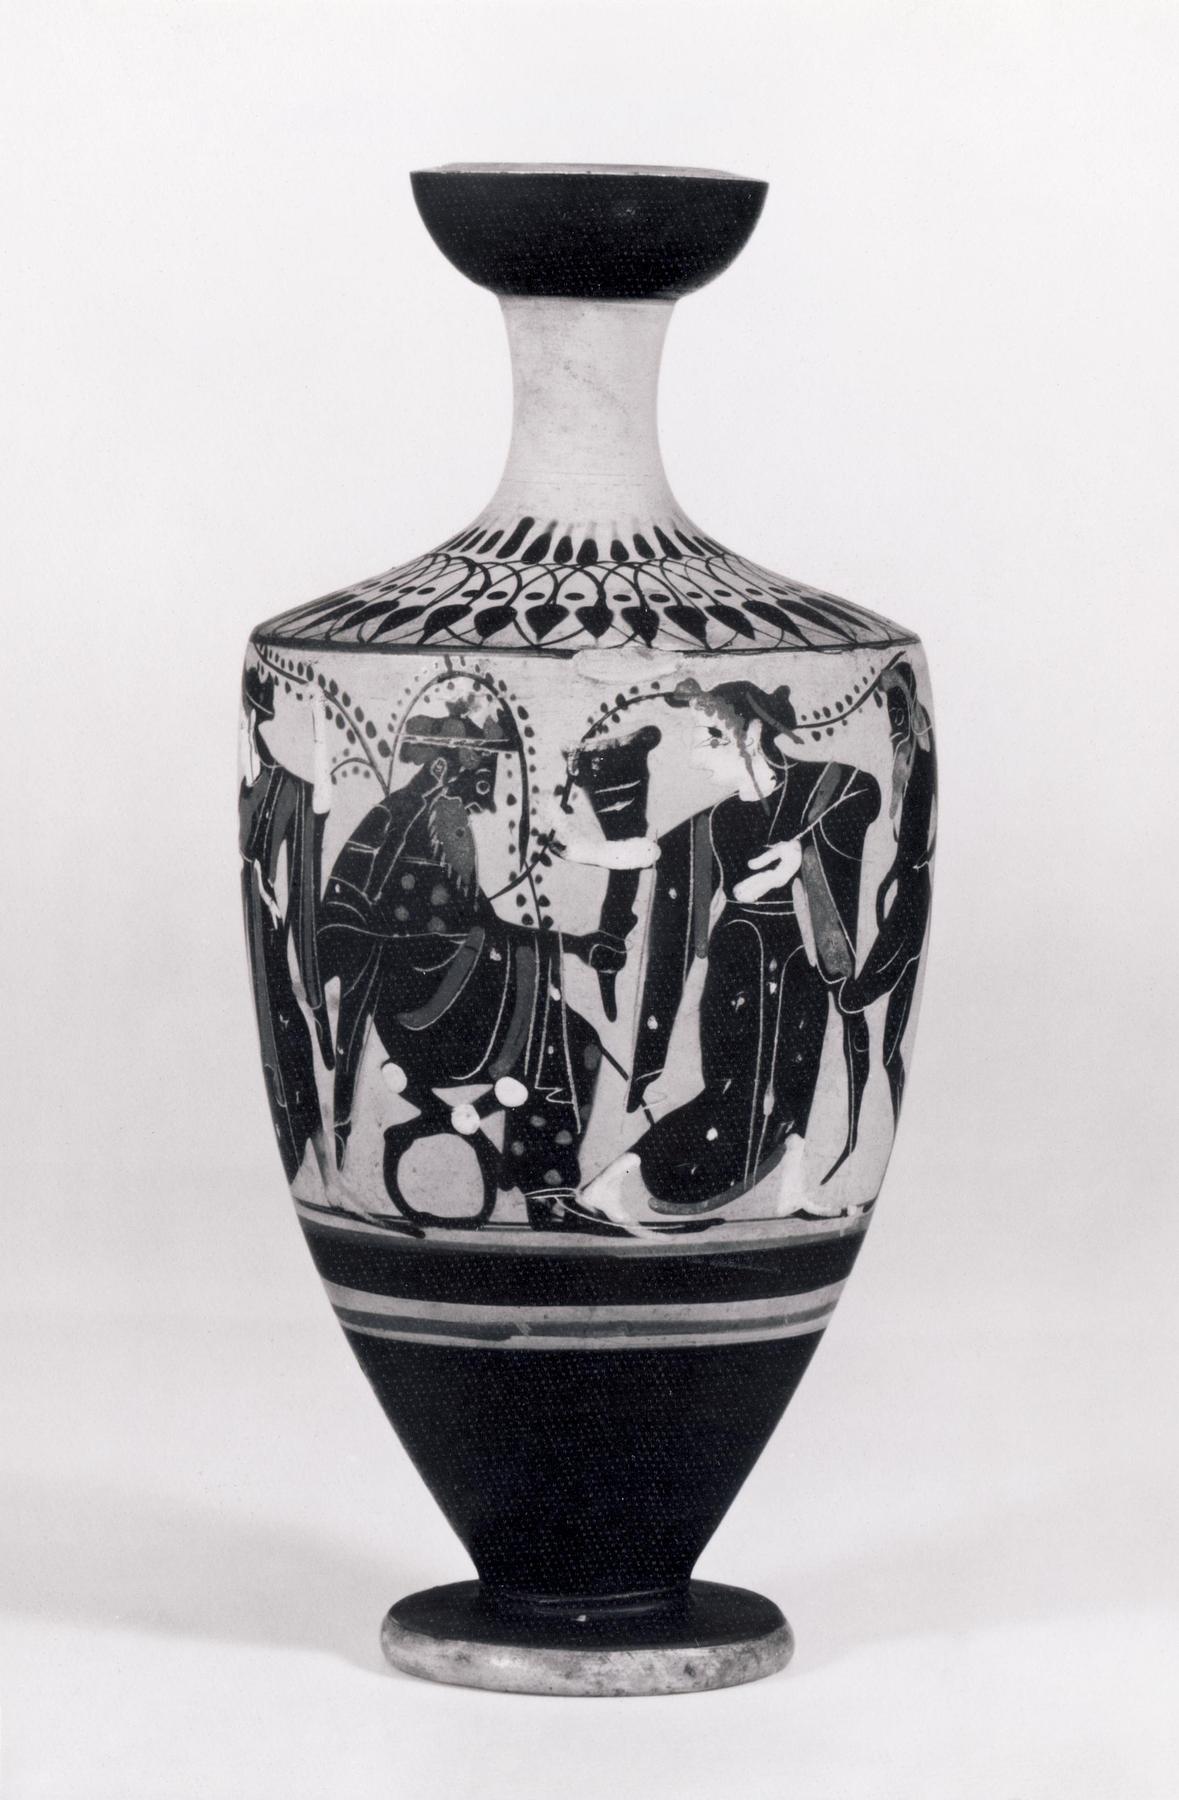 Lekyth med Dionysos blandt silener, mænader og ynglinge, H515